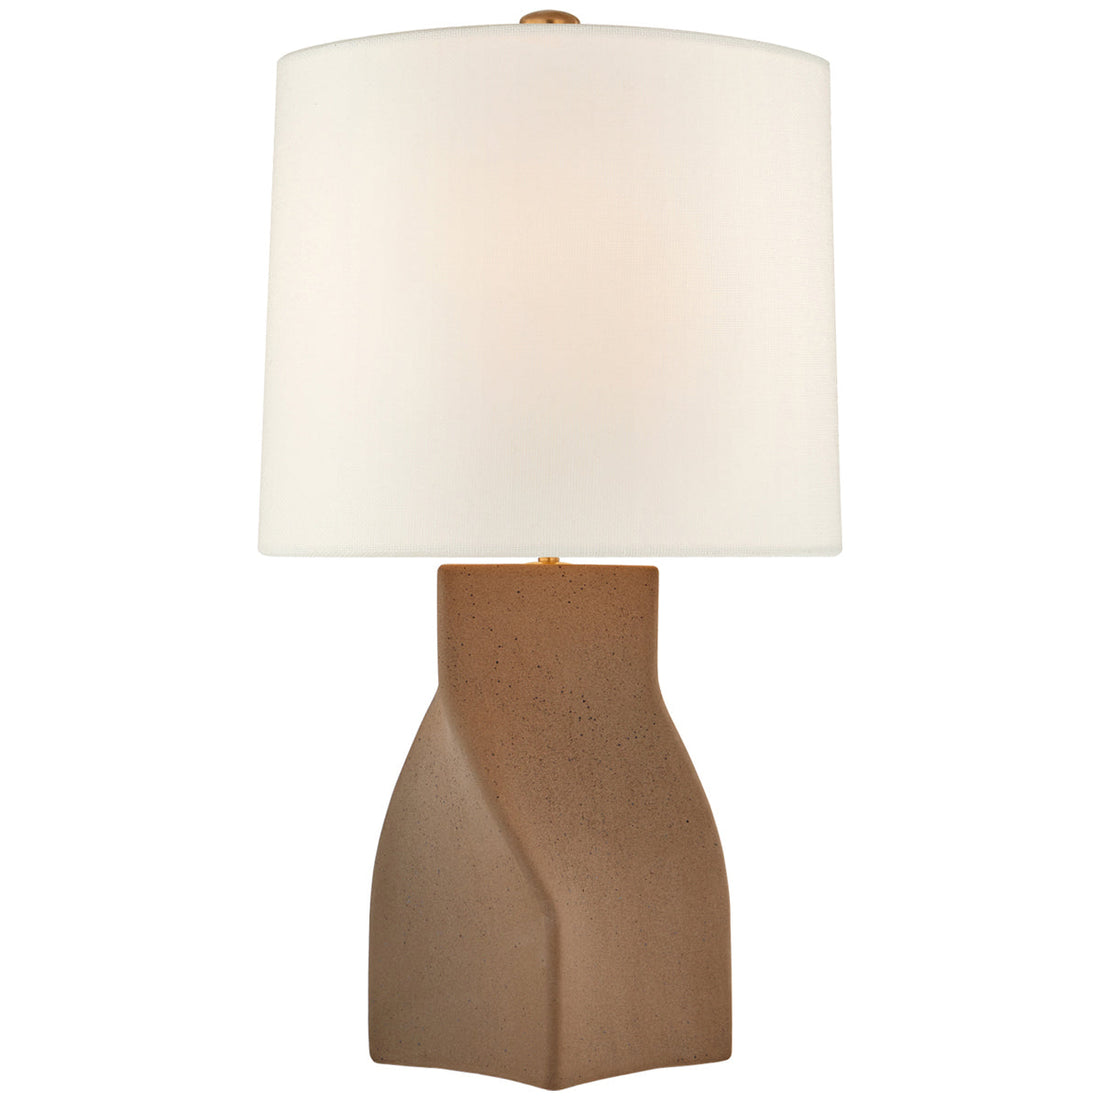 Visual Comfort Claribel Large Table Lamp